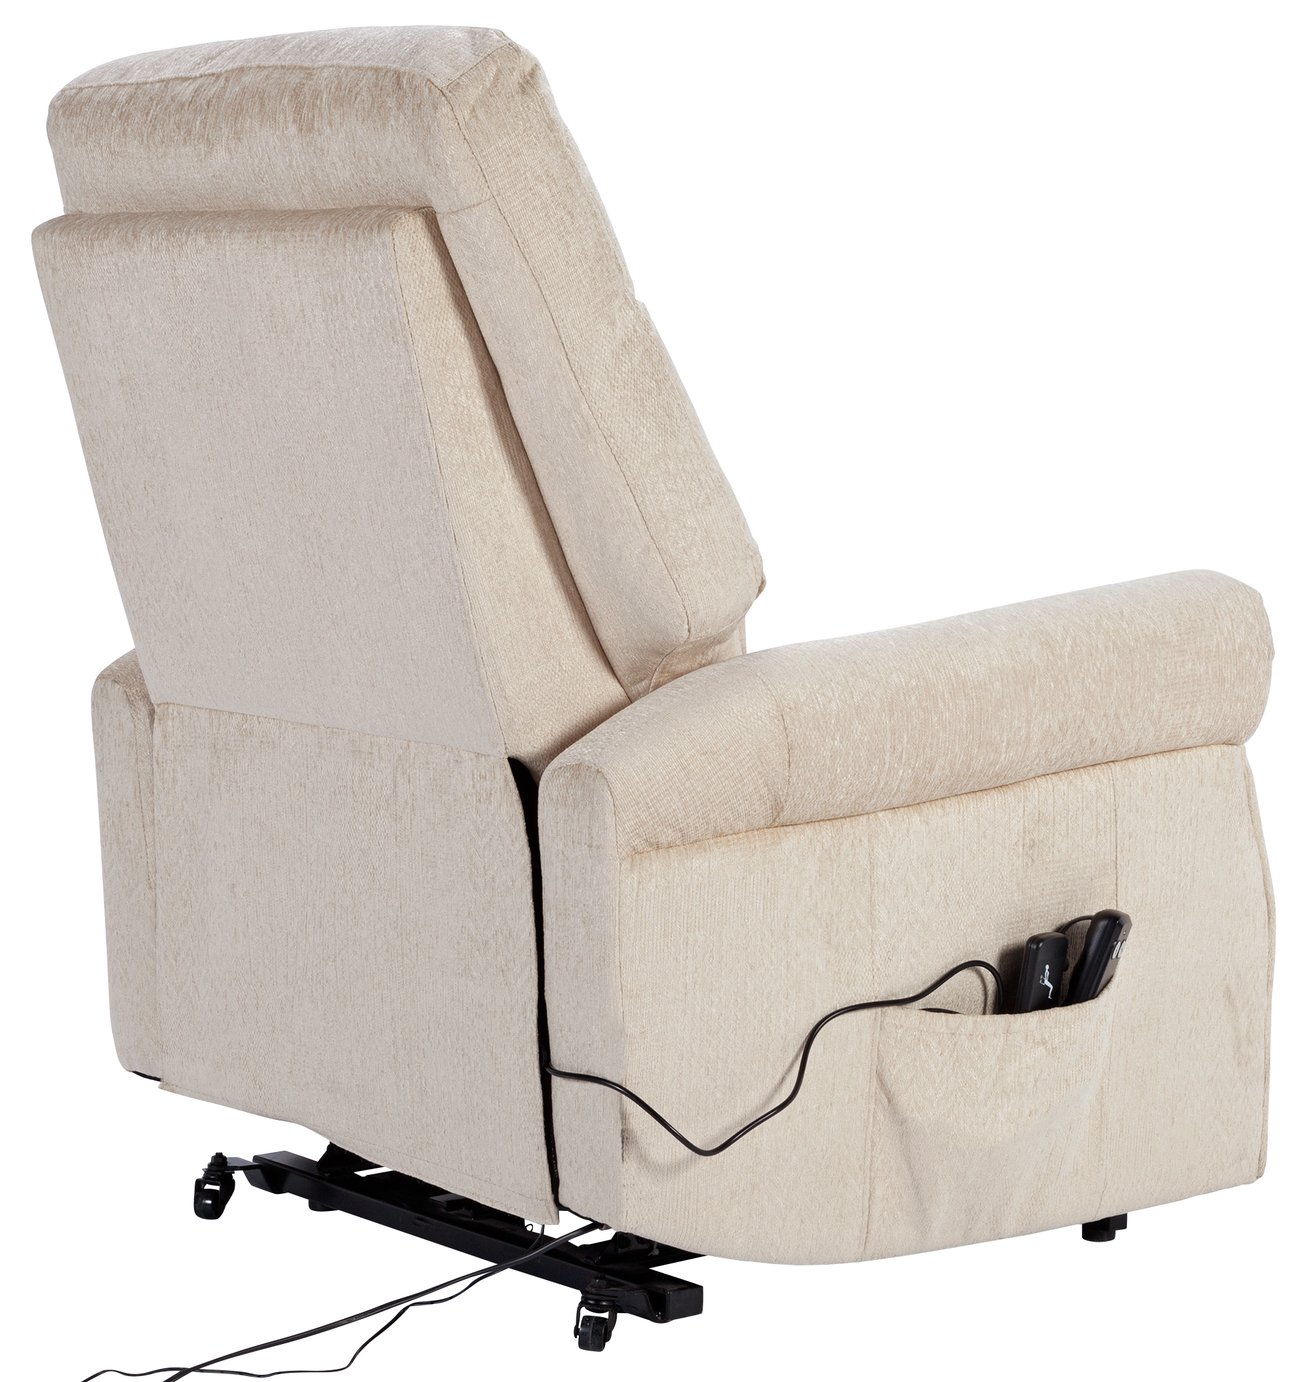 Argos Clarke Riser Recliner Heated Chair Reviews